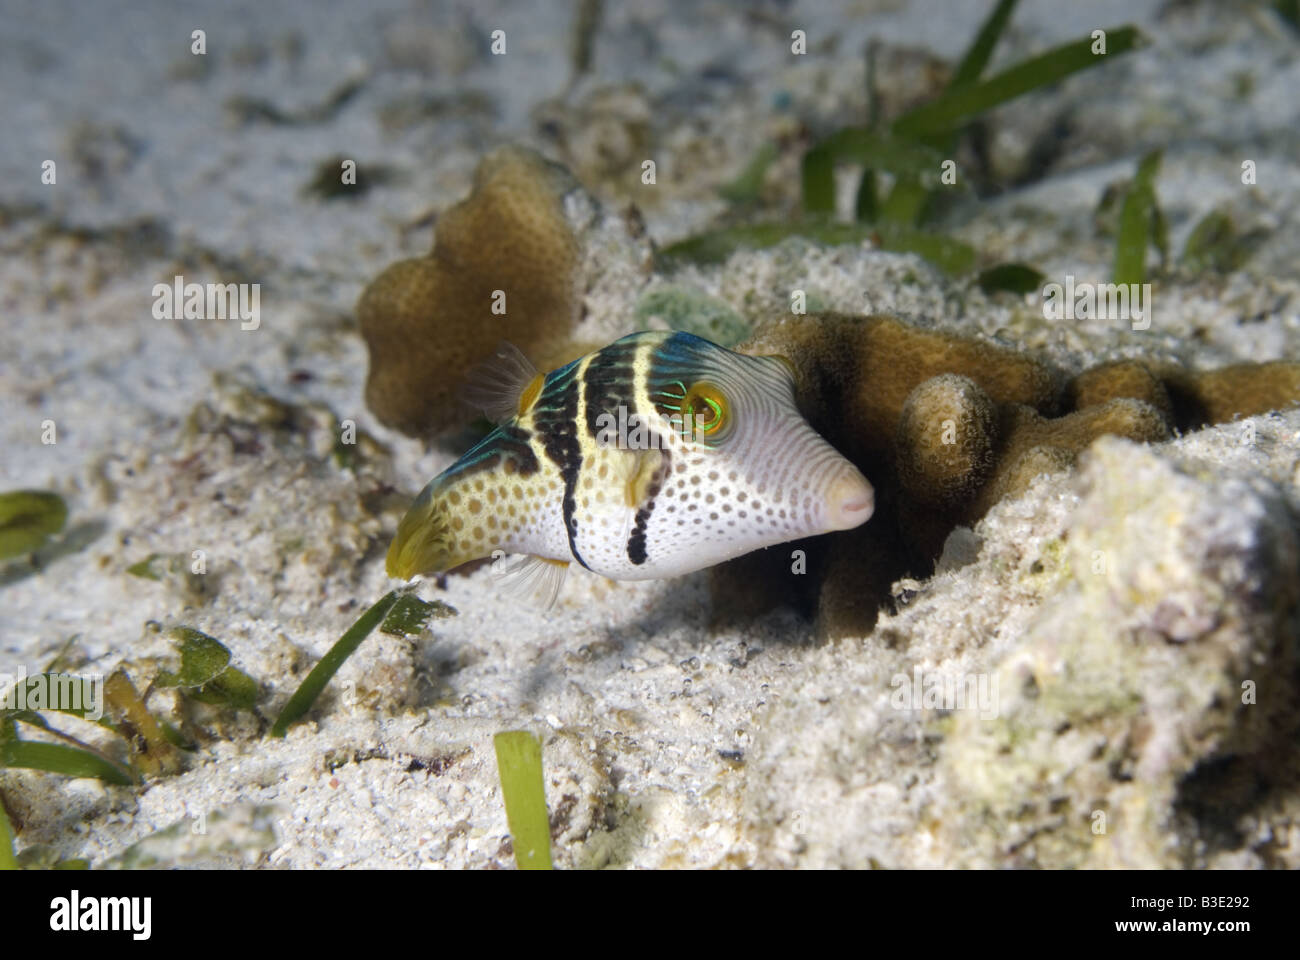 Pufferfish under water Stock Photo